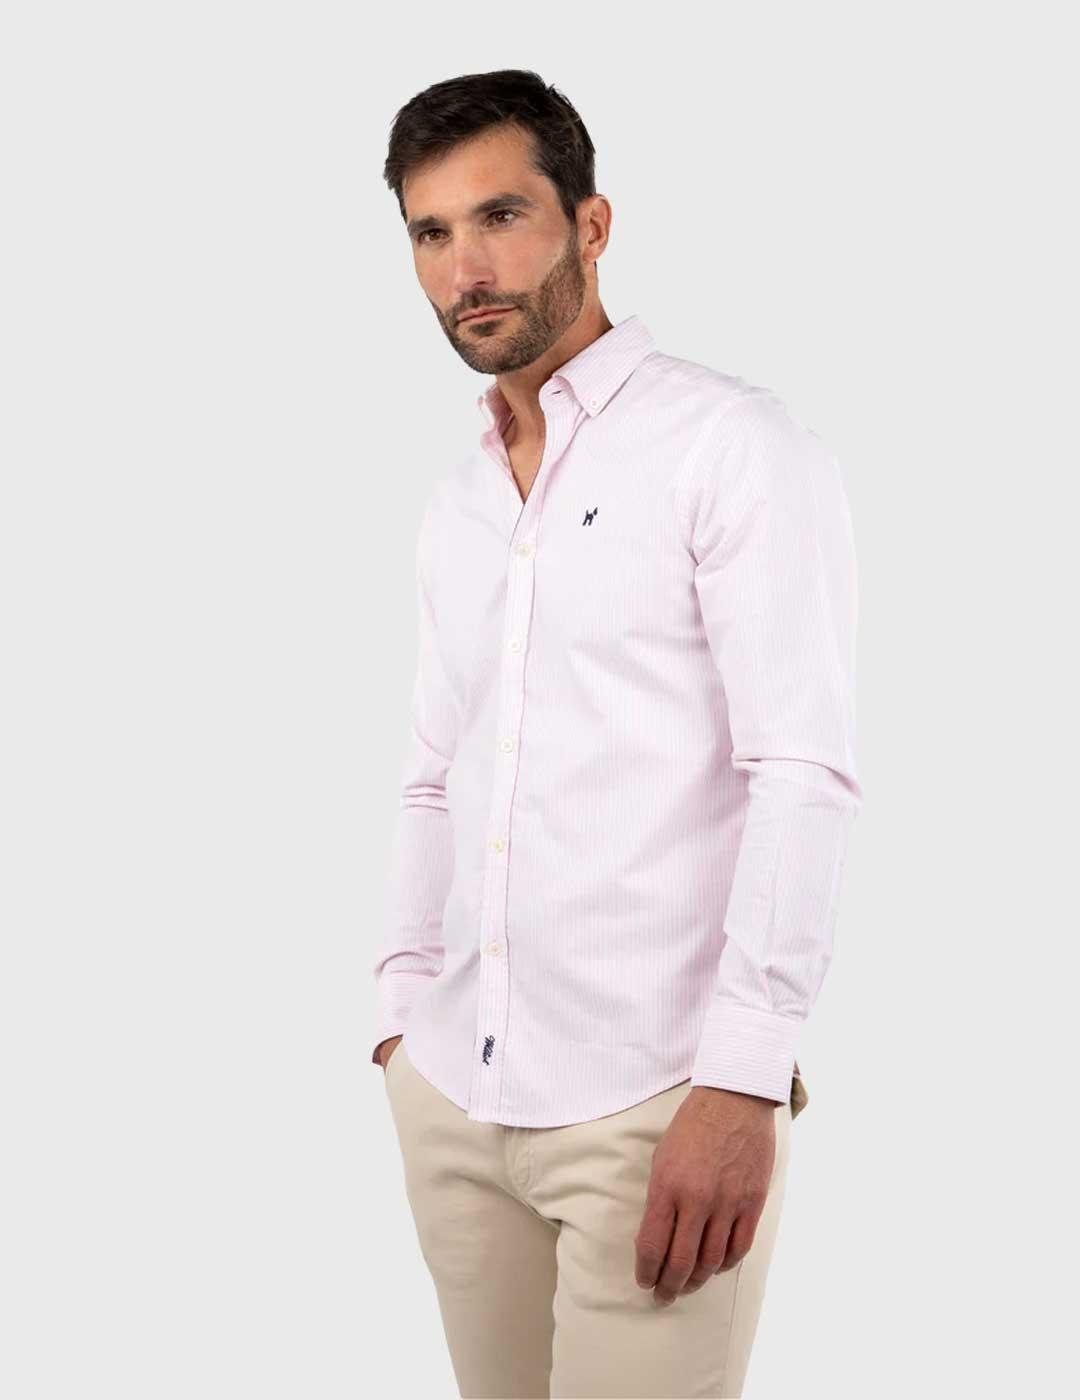 Williot Camisa Oxford Raya Kodak rosa para hombre